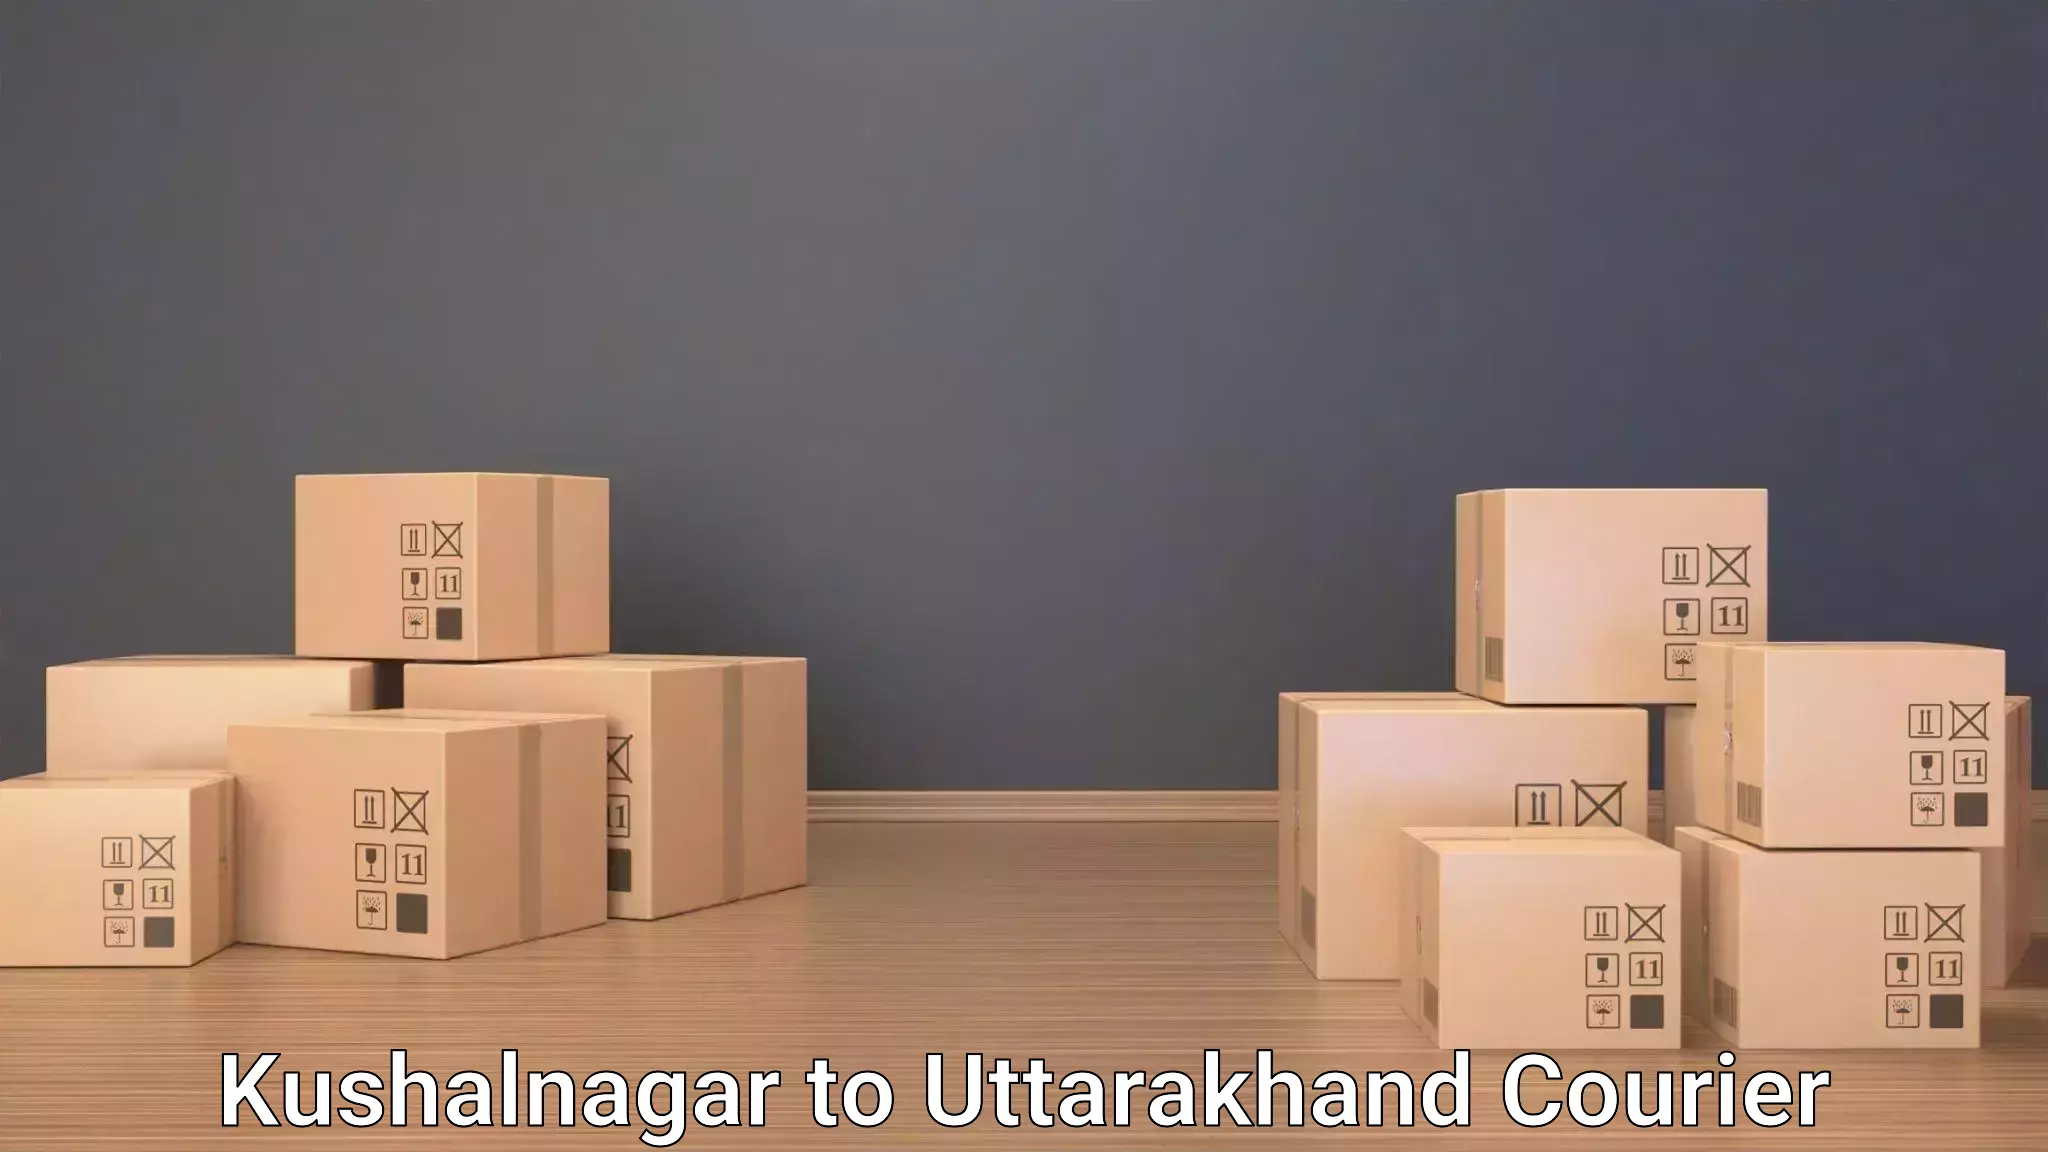 Automated luggage transport Kushalnagar to Doiwala